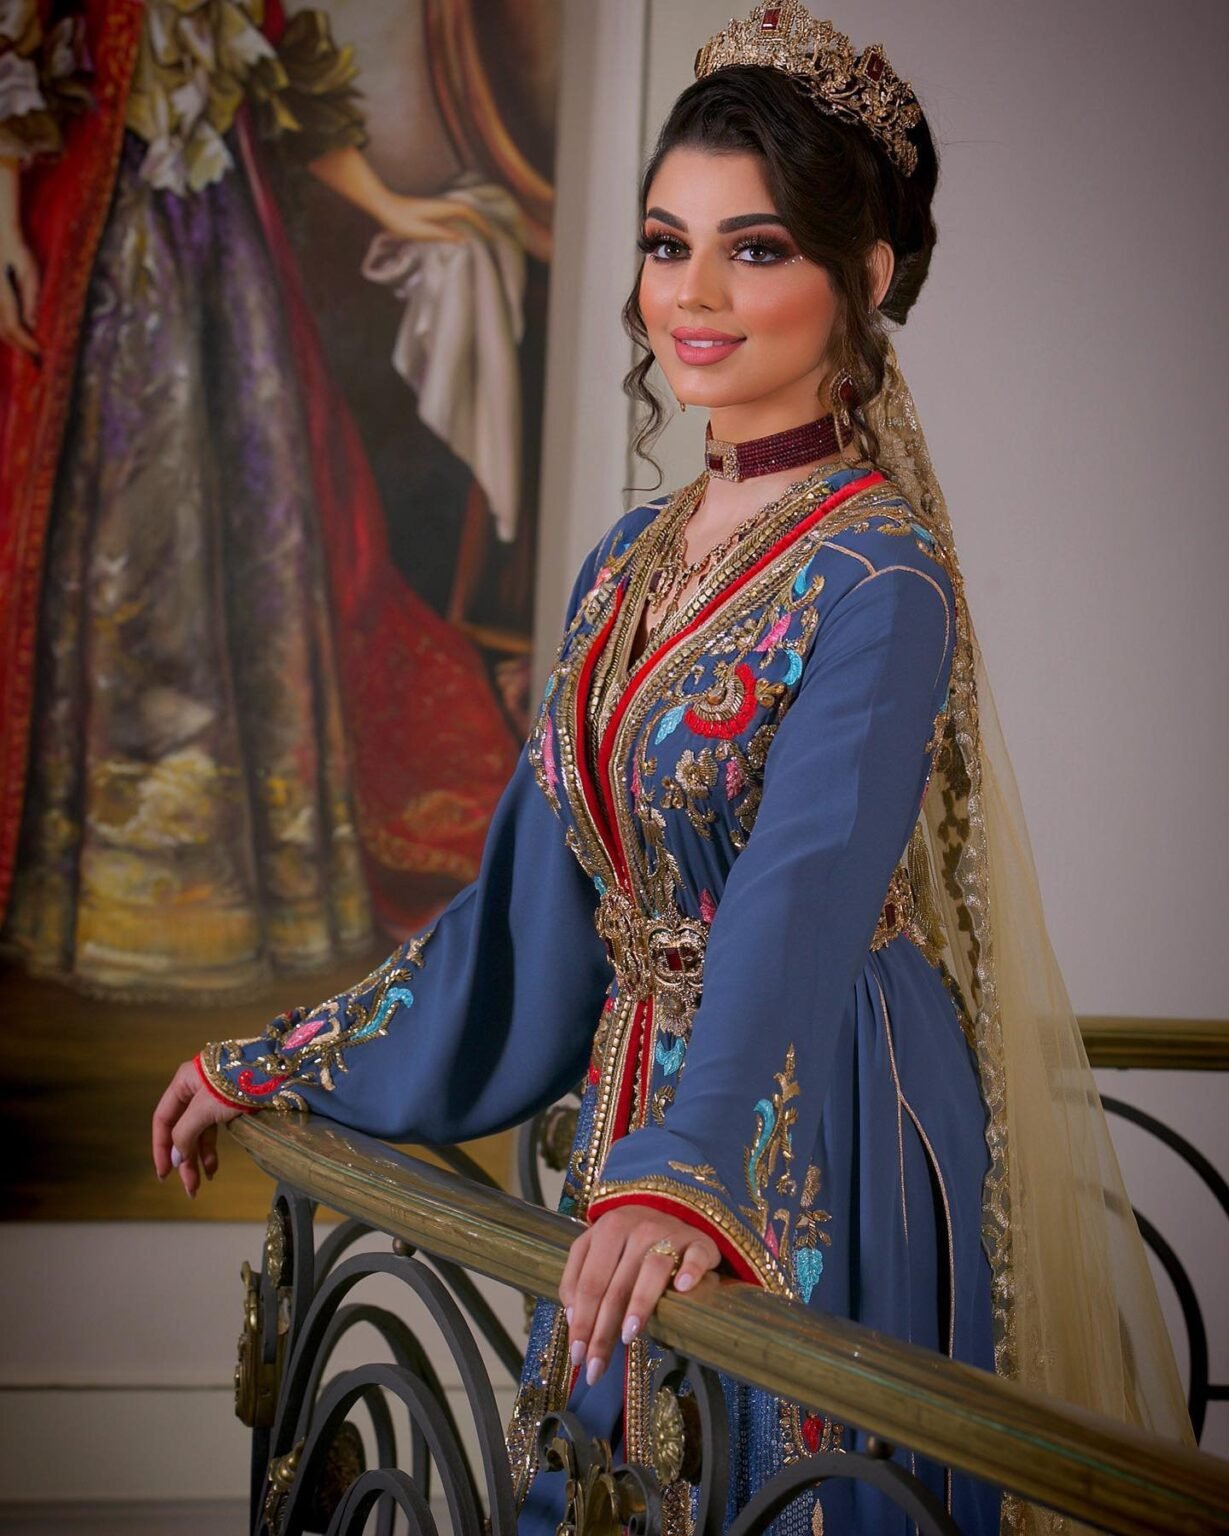 Symphonie de Couleurs : Les caftans marocains haute couture célèbrent la richesse des couleurs, des teintes vives aux nuances douces. Trouvez la palette qui correspond à votre personnalité et à votre style.